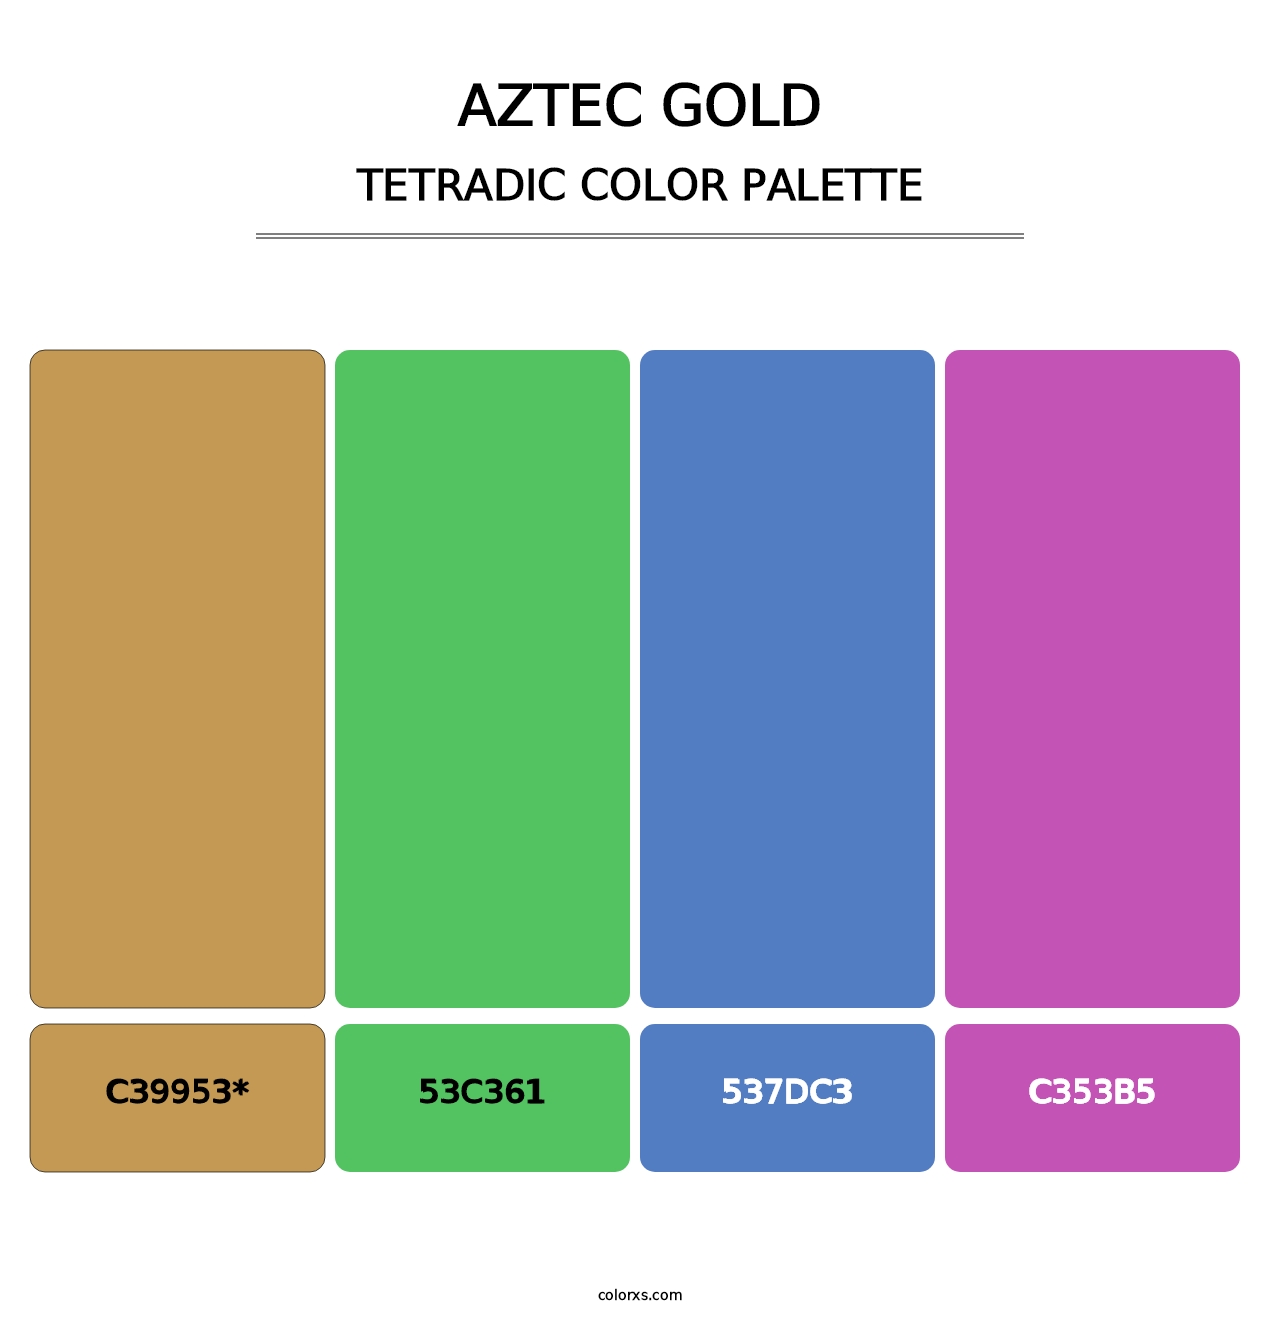 Aztec Gold - Tetradic Color Palette